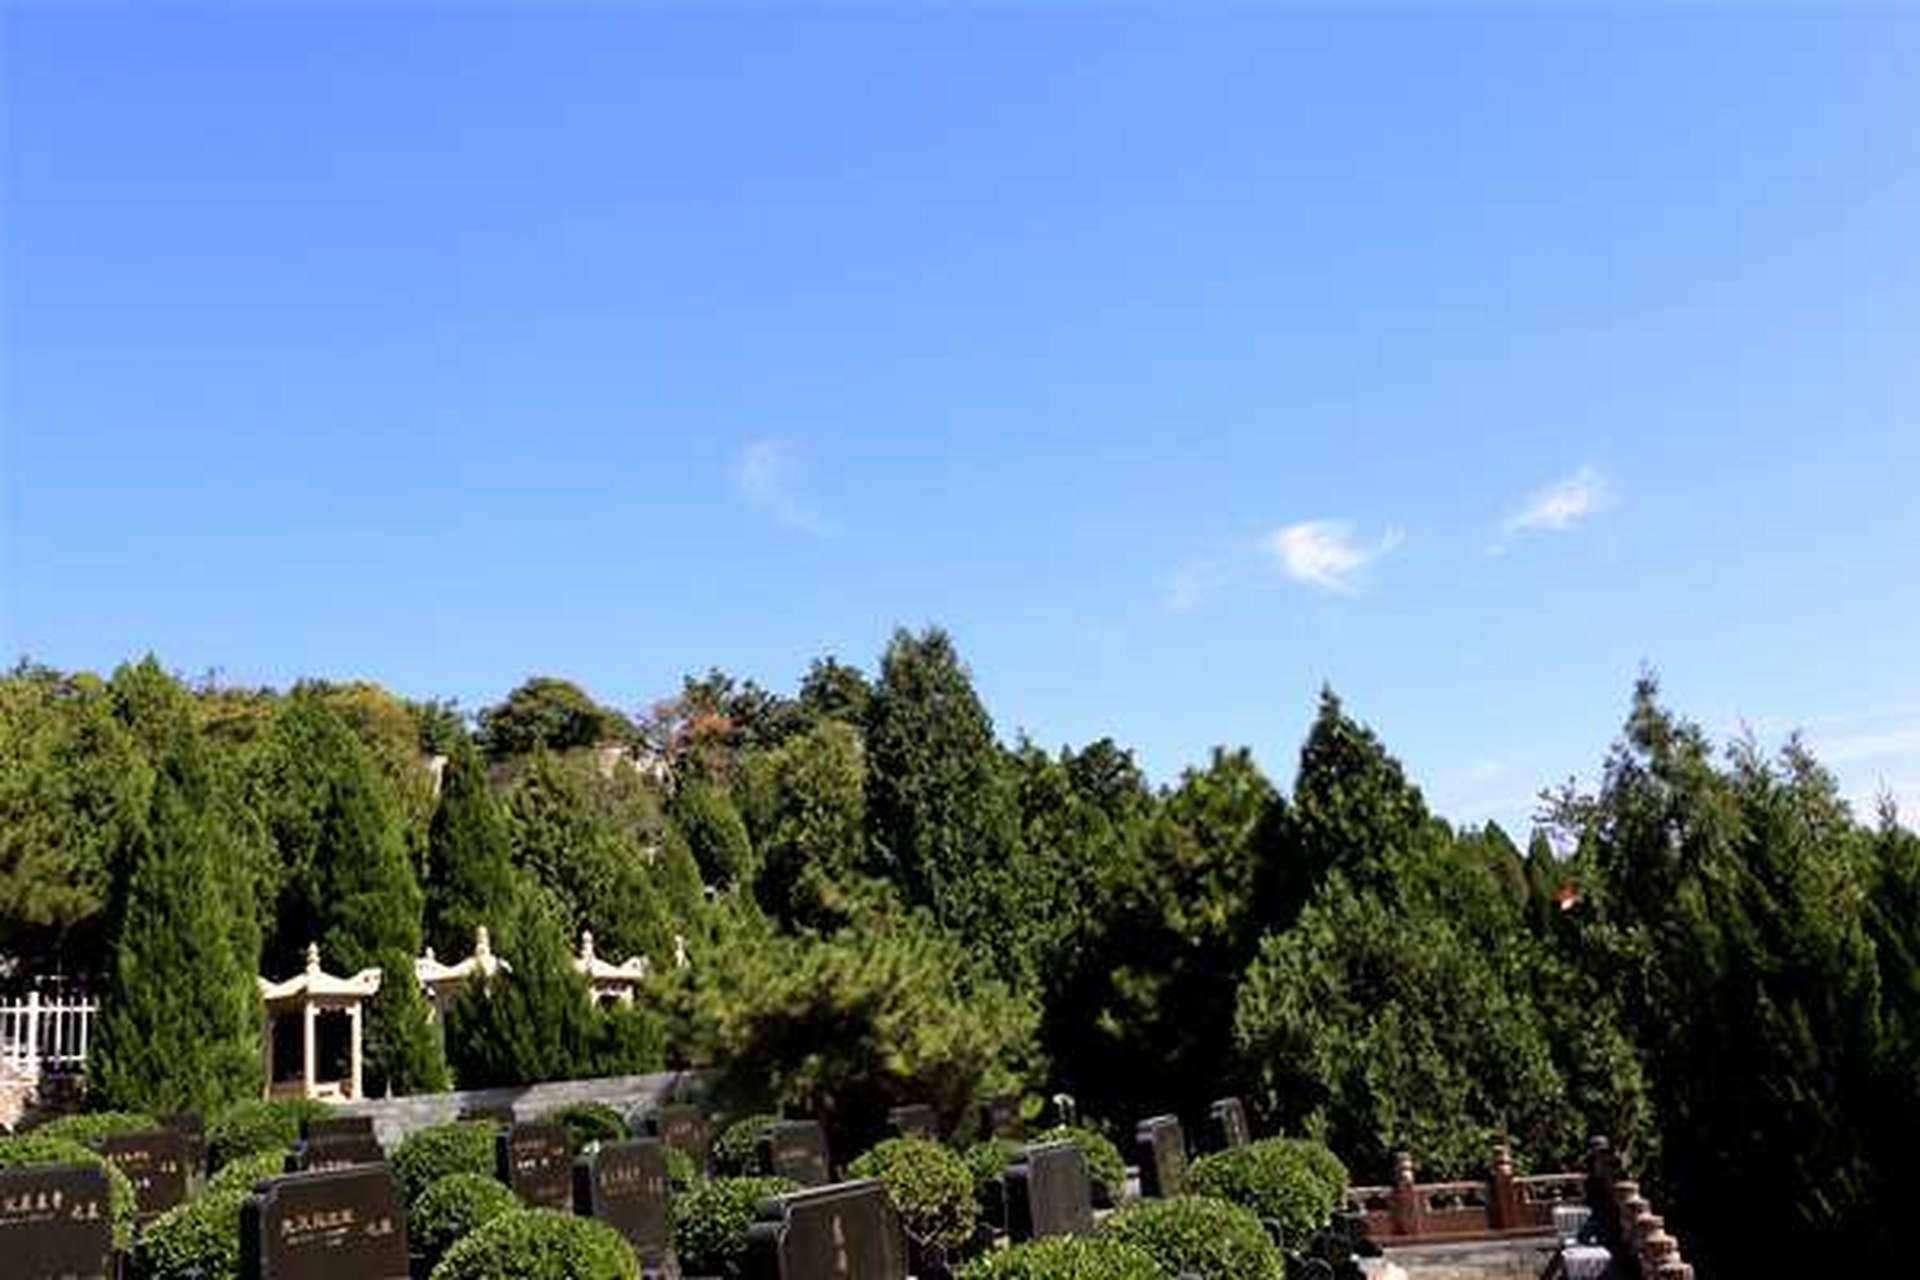 海淀区温泉村温泉大队北坡  北京温泉墓园是一座风景秀丽的园林式墓地